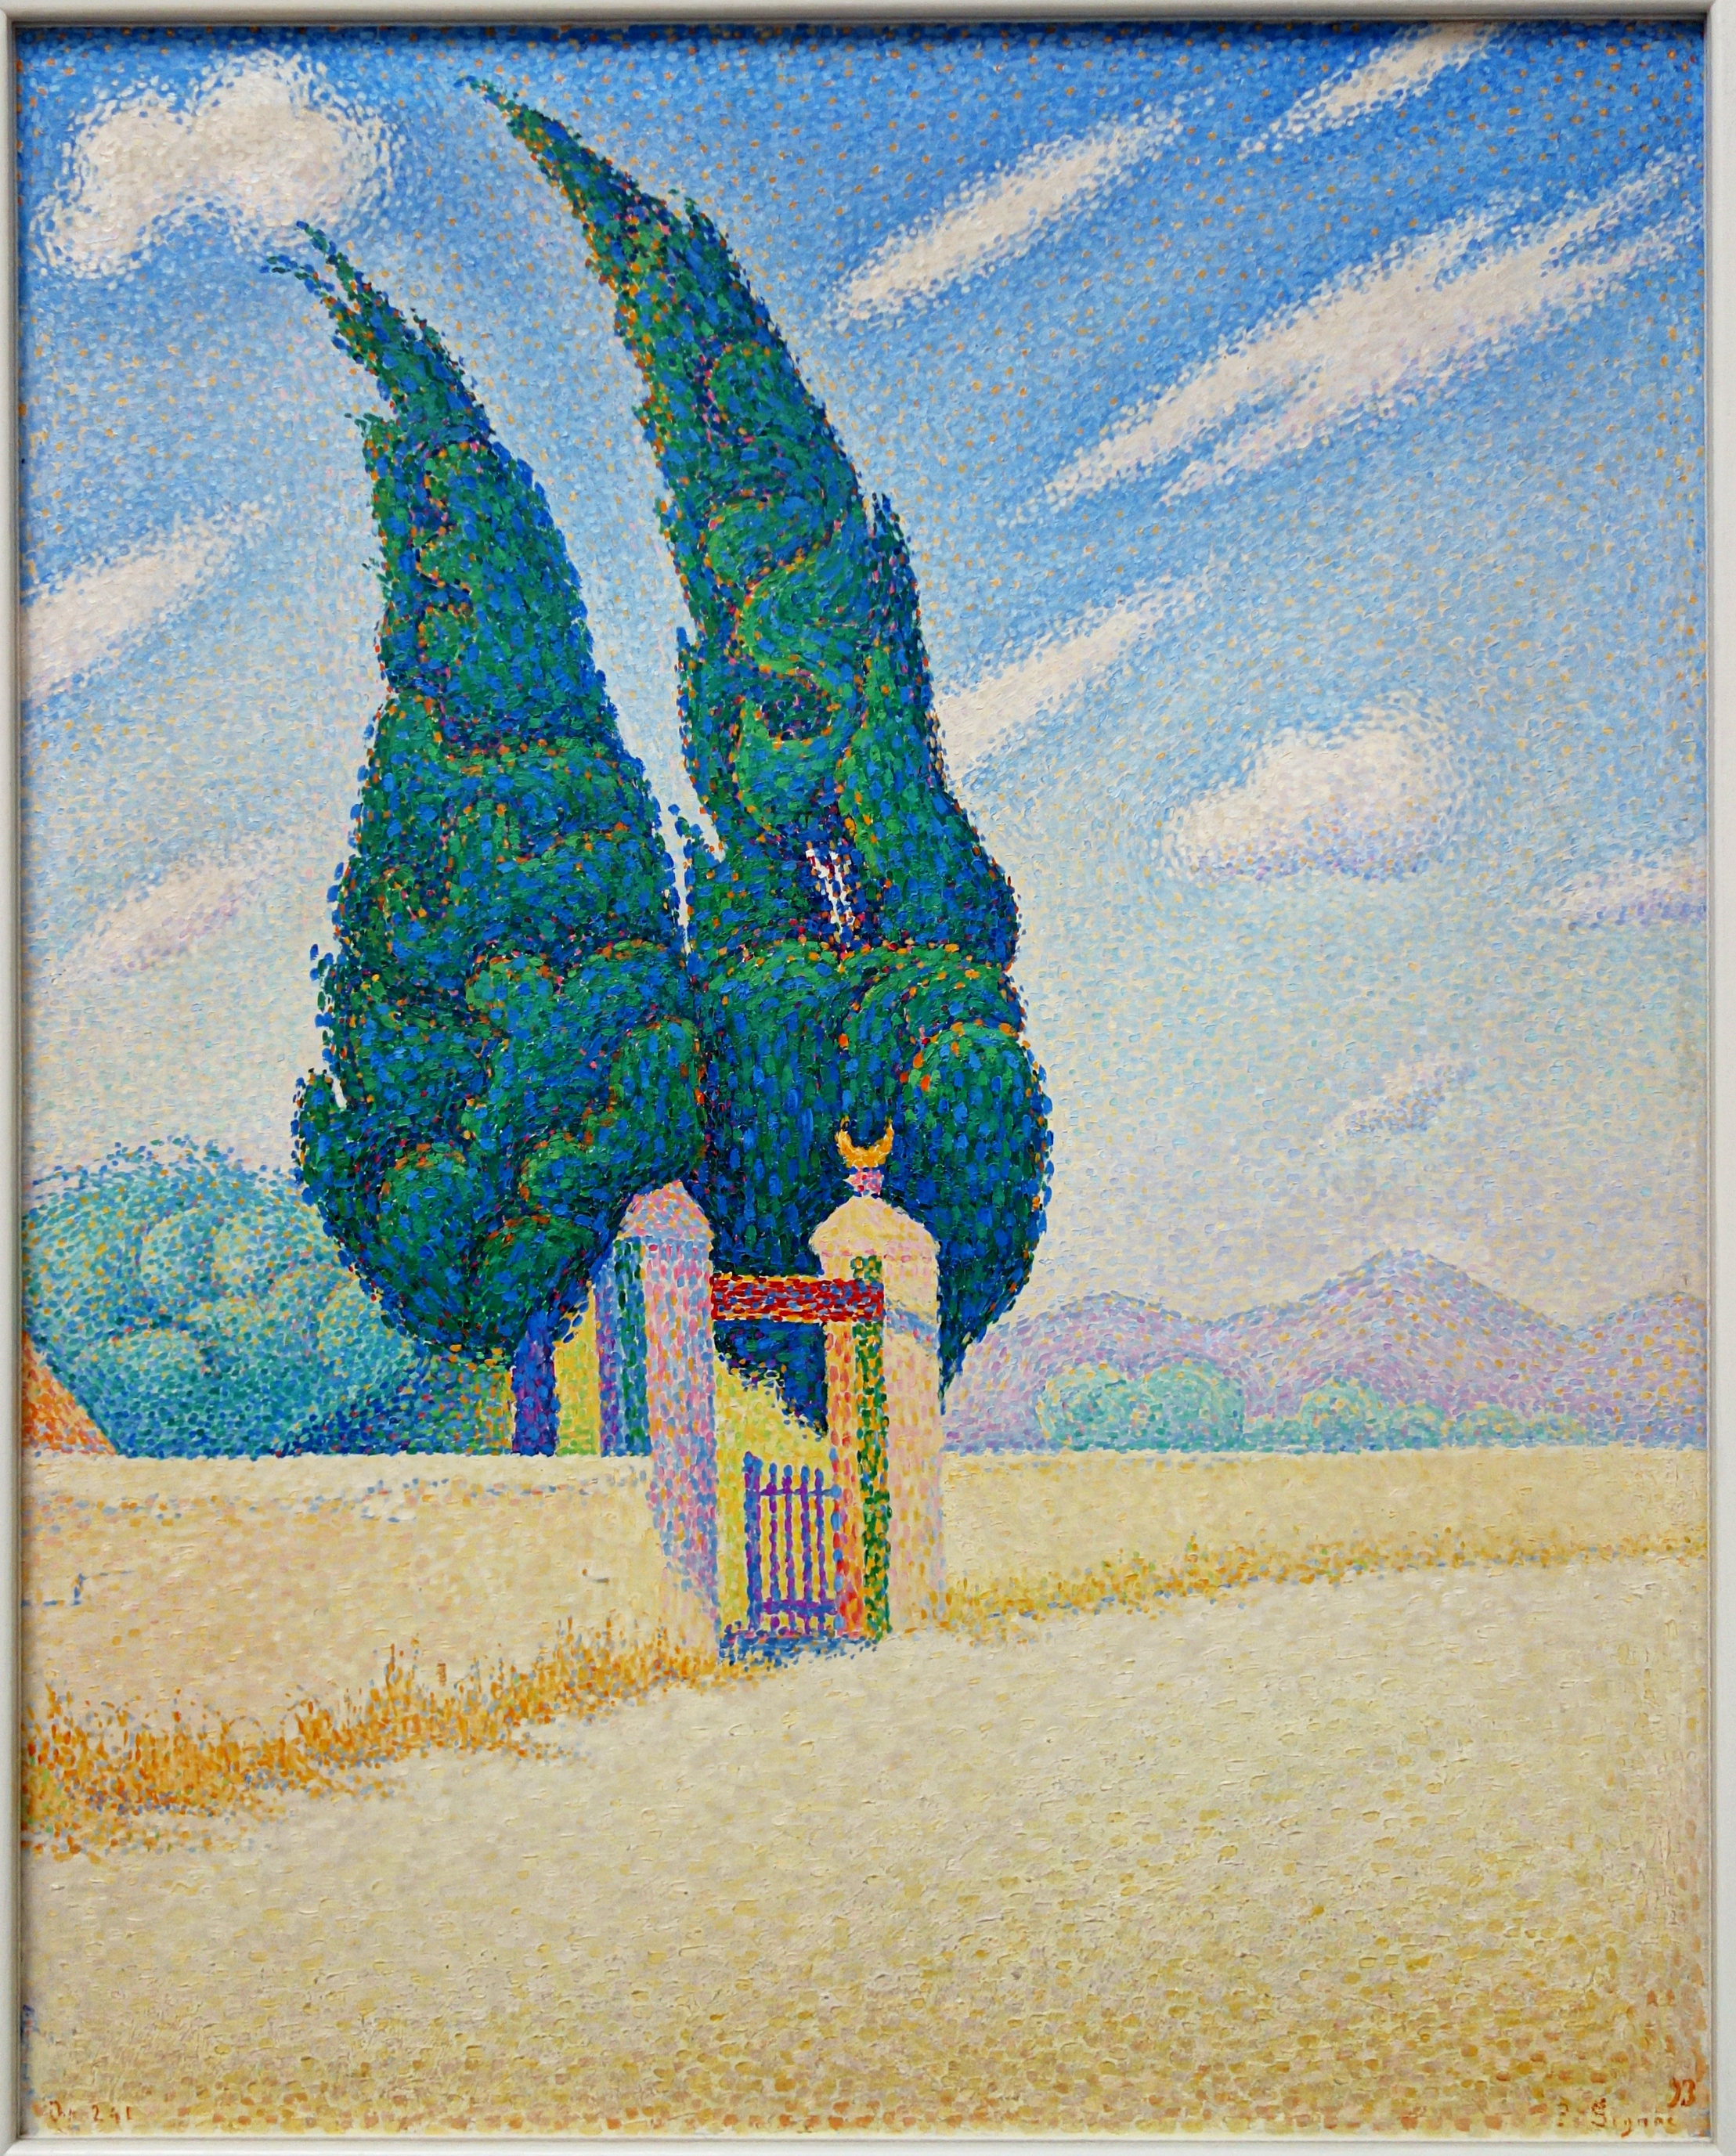 兩棵柏樹 by Paul Signac - 1893 年 - 80 x 64 釐米 